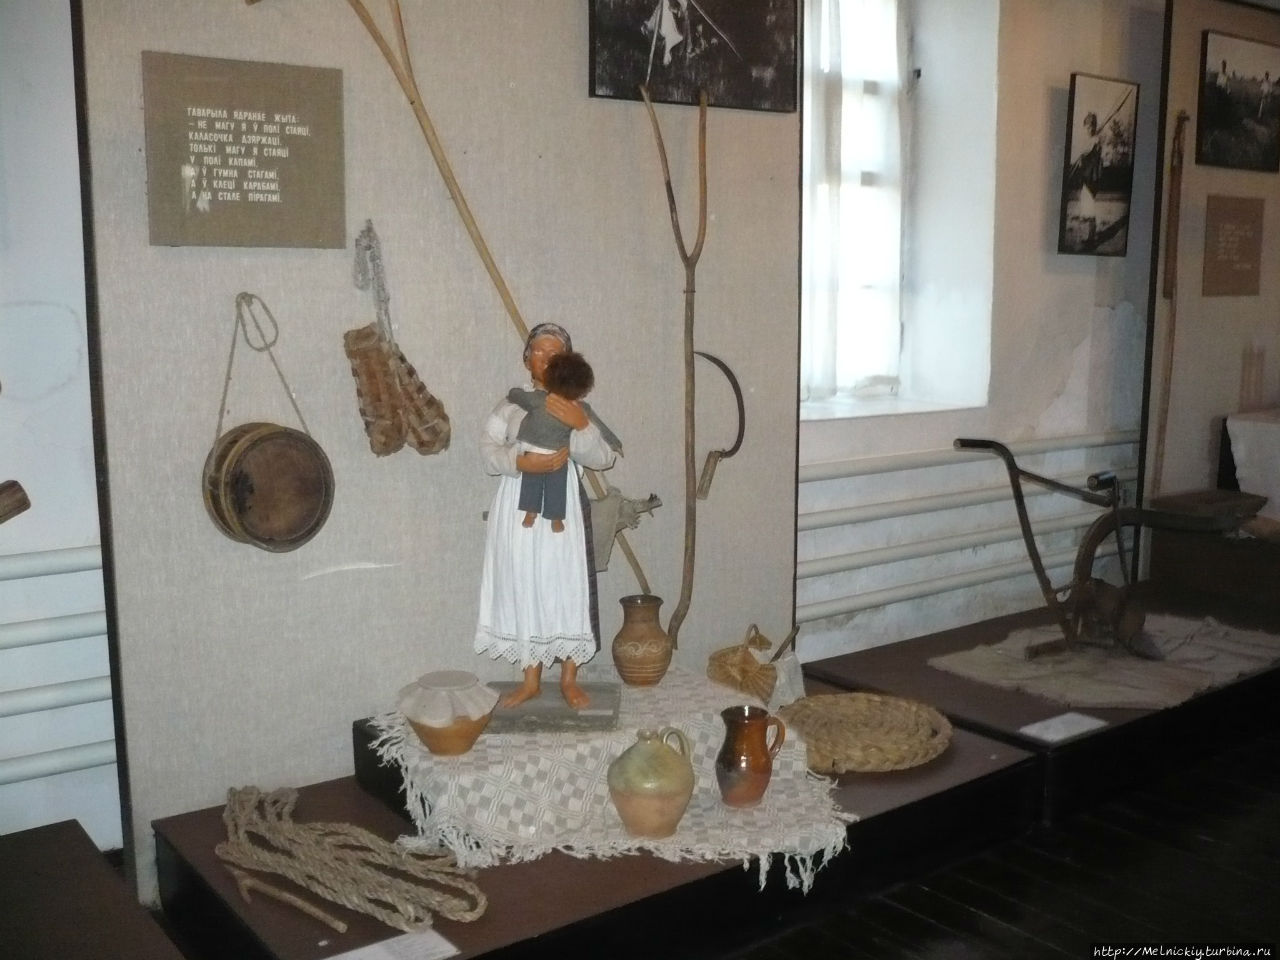 Этнографический музей «Мельница» («Млын») Орша, Беларусь